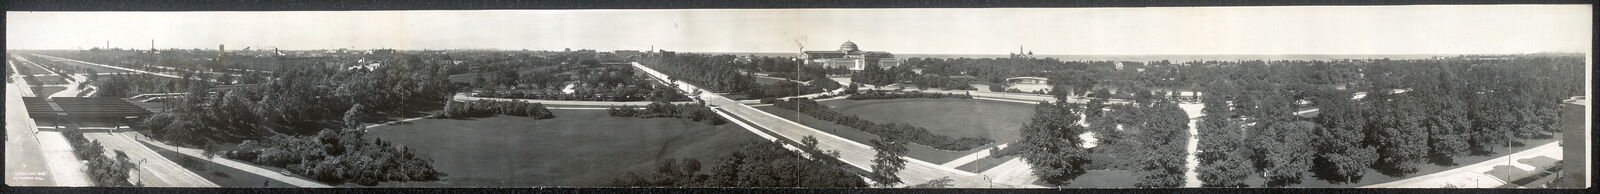 Photo:1908 Panorama: Jackson Park, Chicago, Illinois